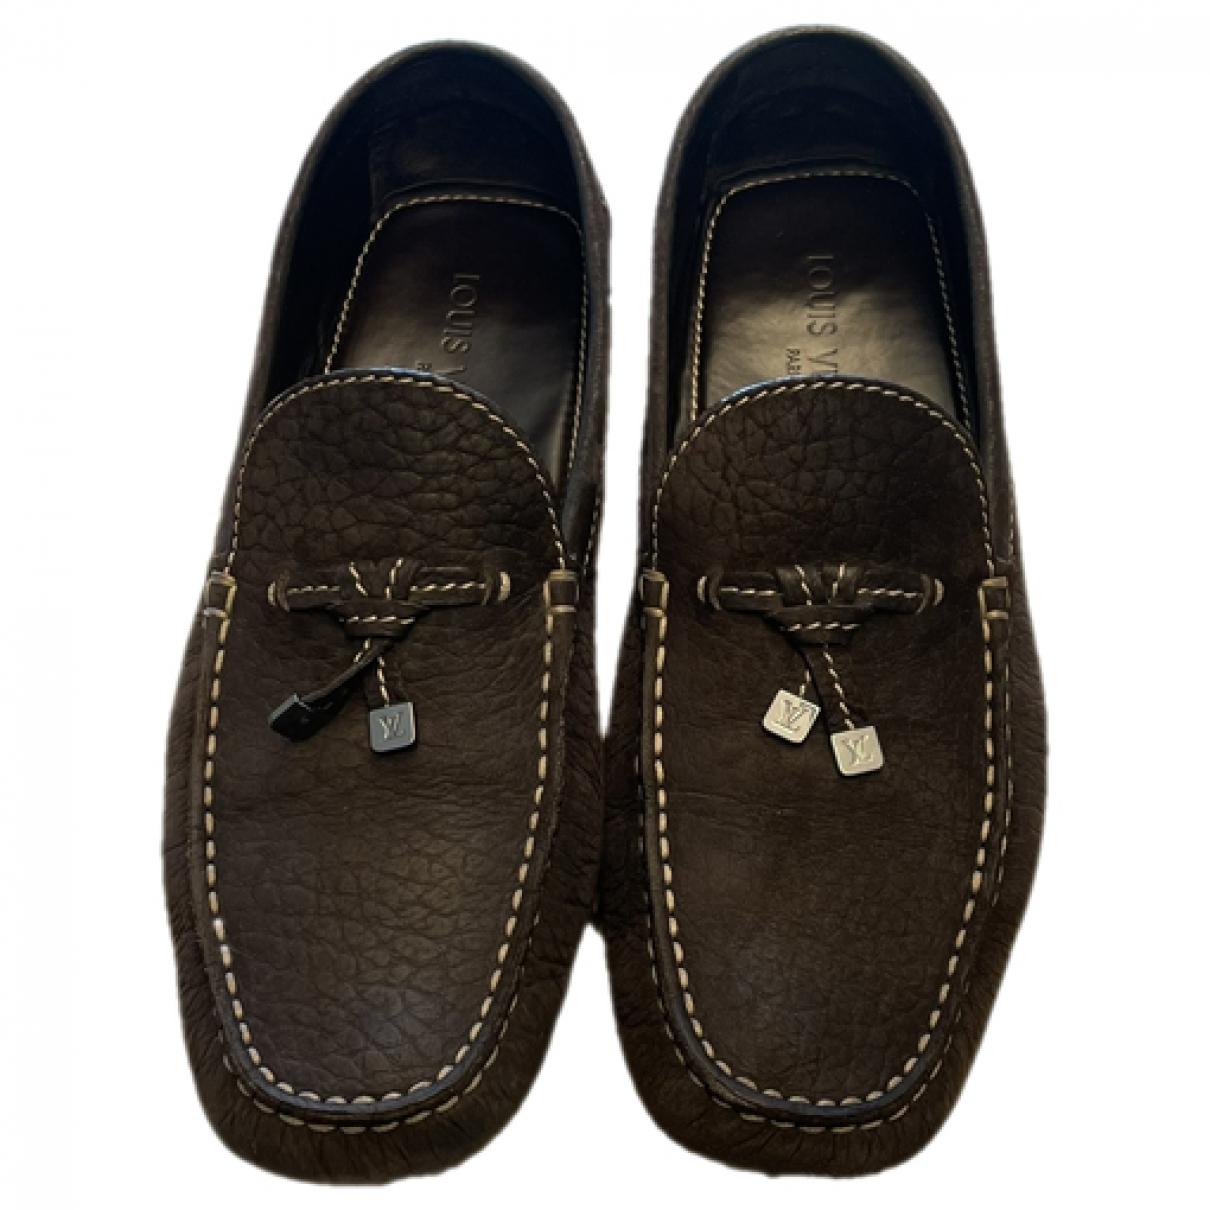 ≡ Zapatos LOUIS VUITTON para hombre - Comprar o Vender LV - Vestiaire  Collective